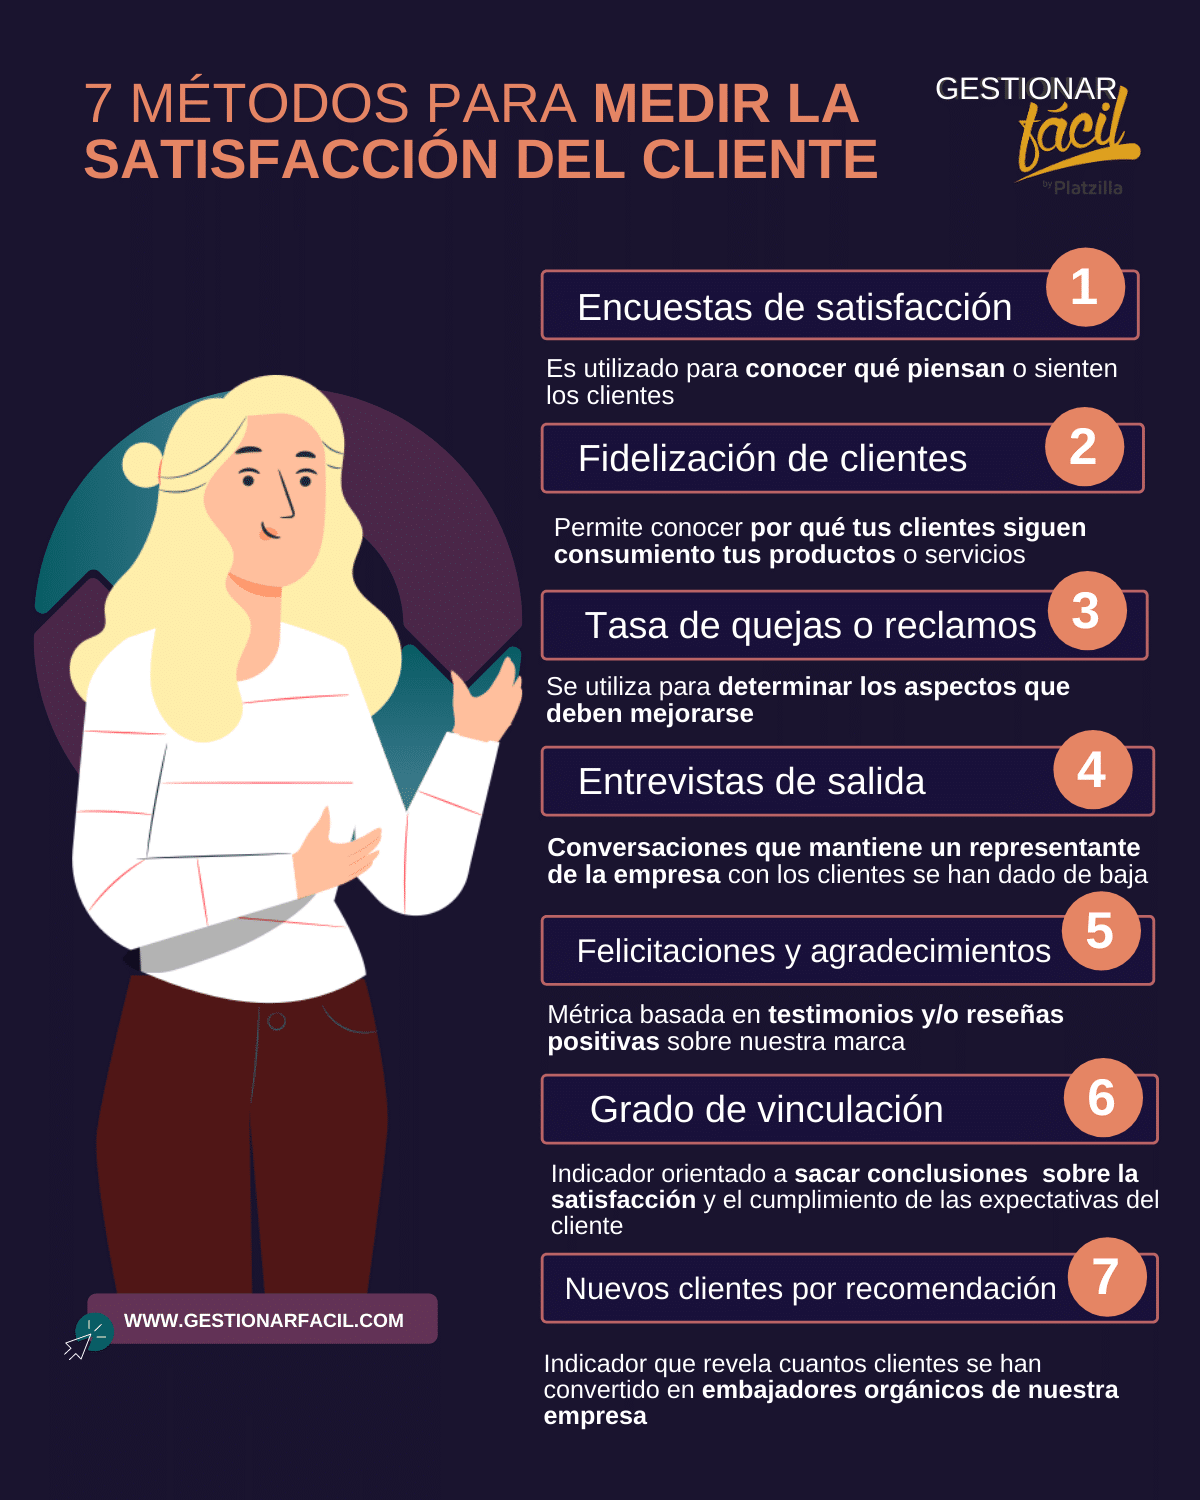 7 Métodos para medir la satisfacción del cliente